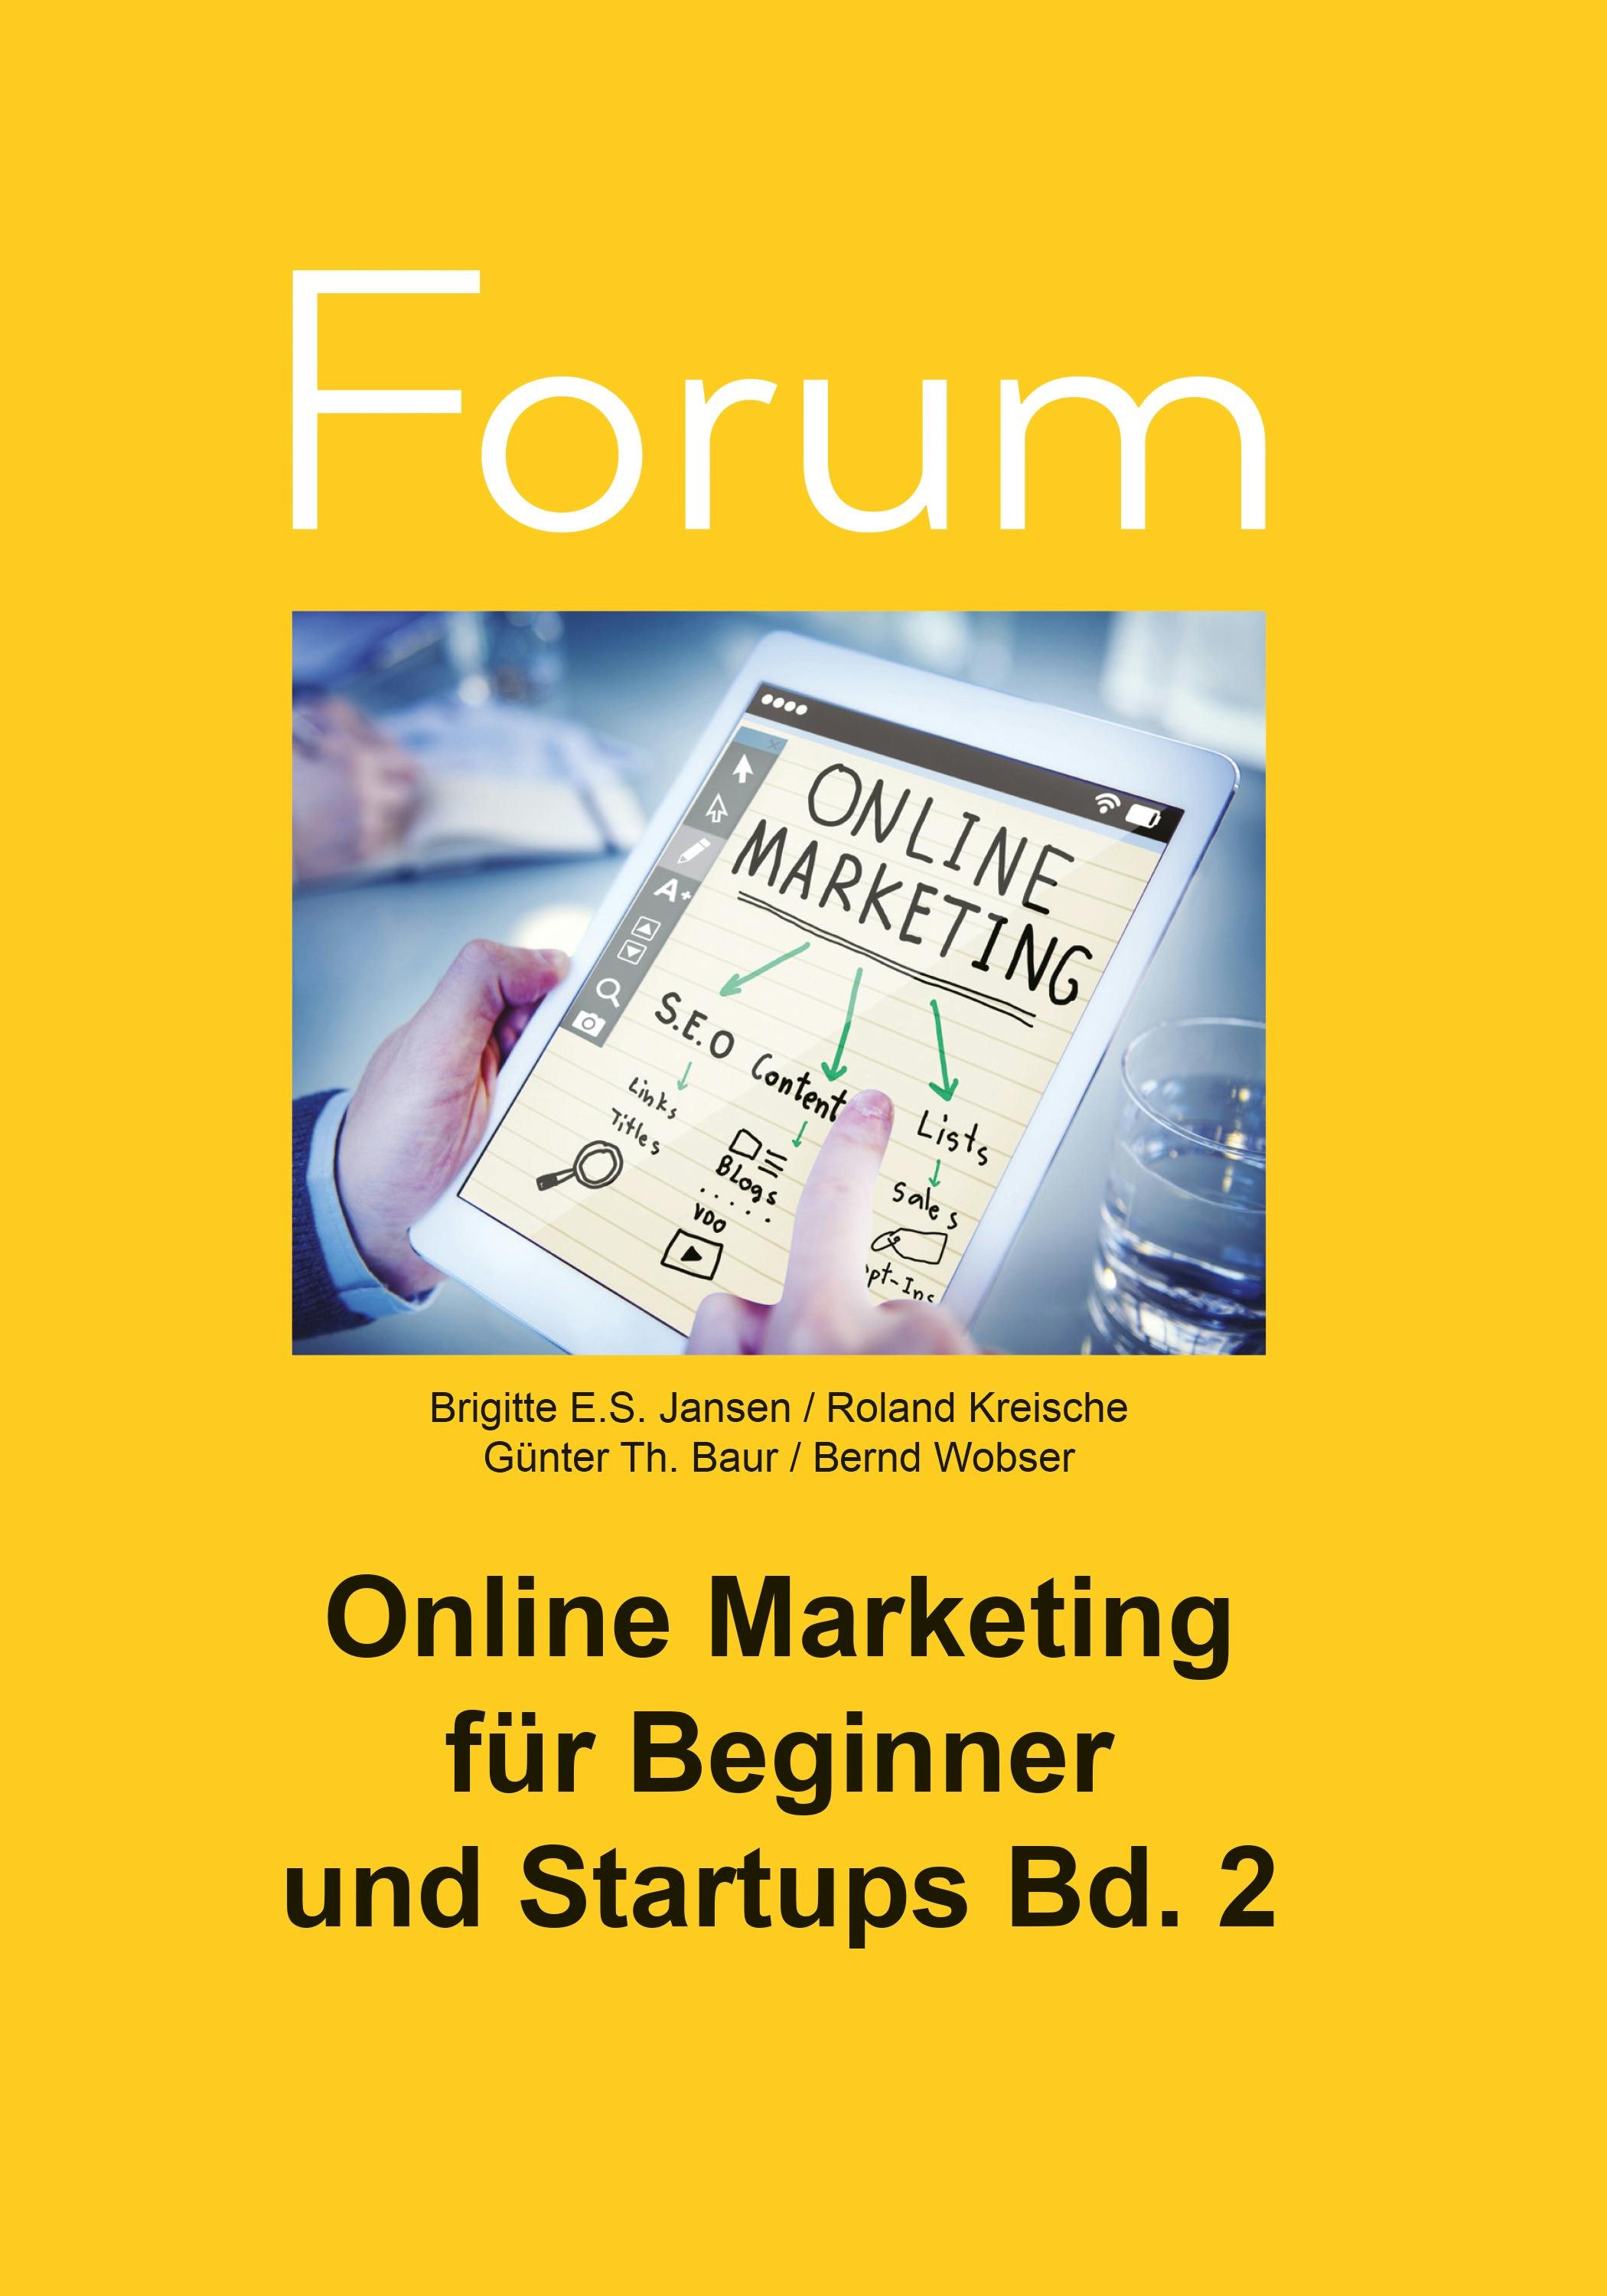 Online Marketing für Beginner und Startups 2 - Roland Kreische, Bernd Wobser, Brigitte E.S. Jansen, Günter Th. Baur